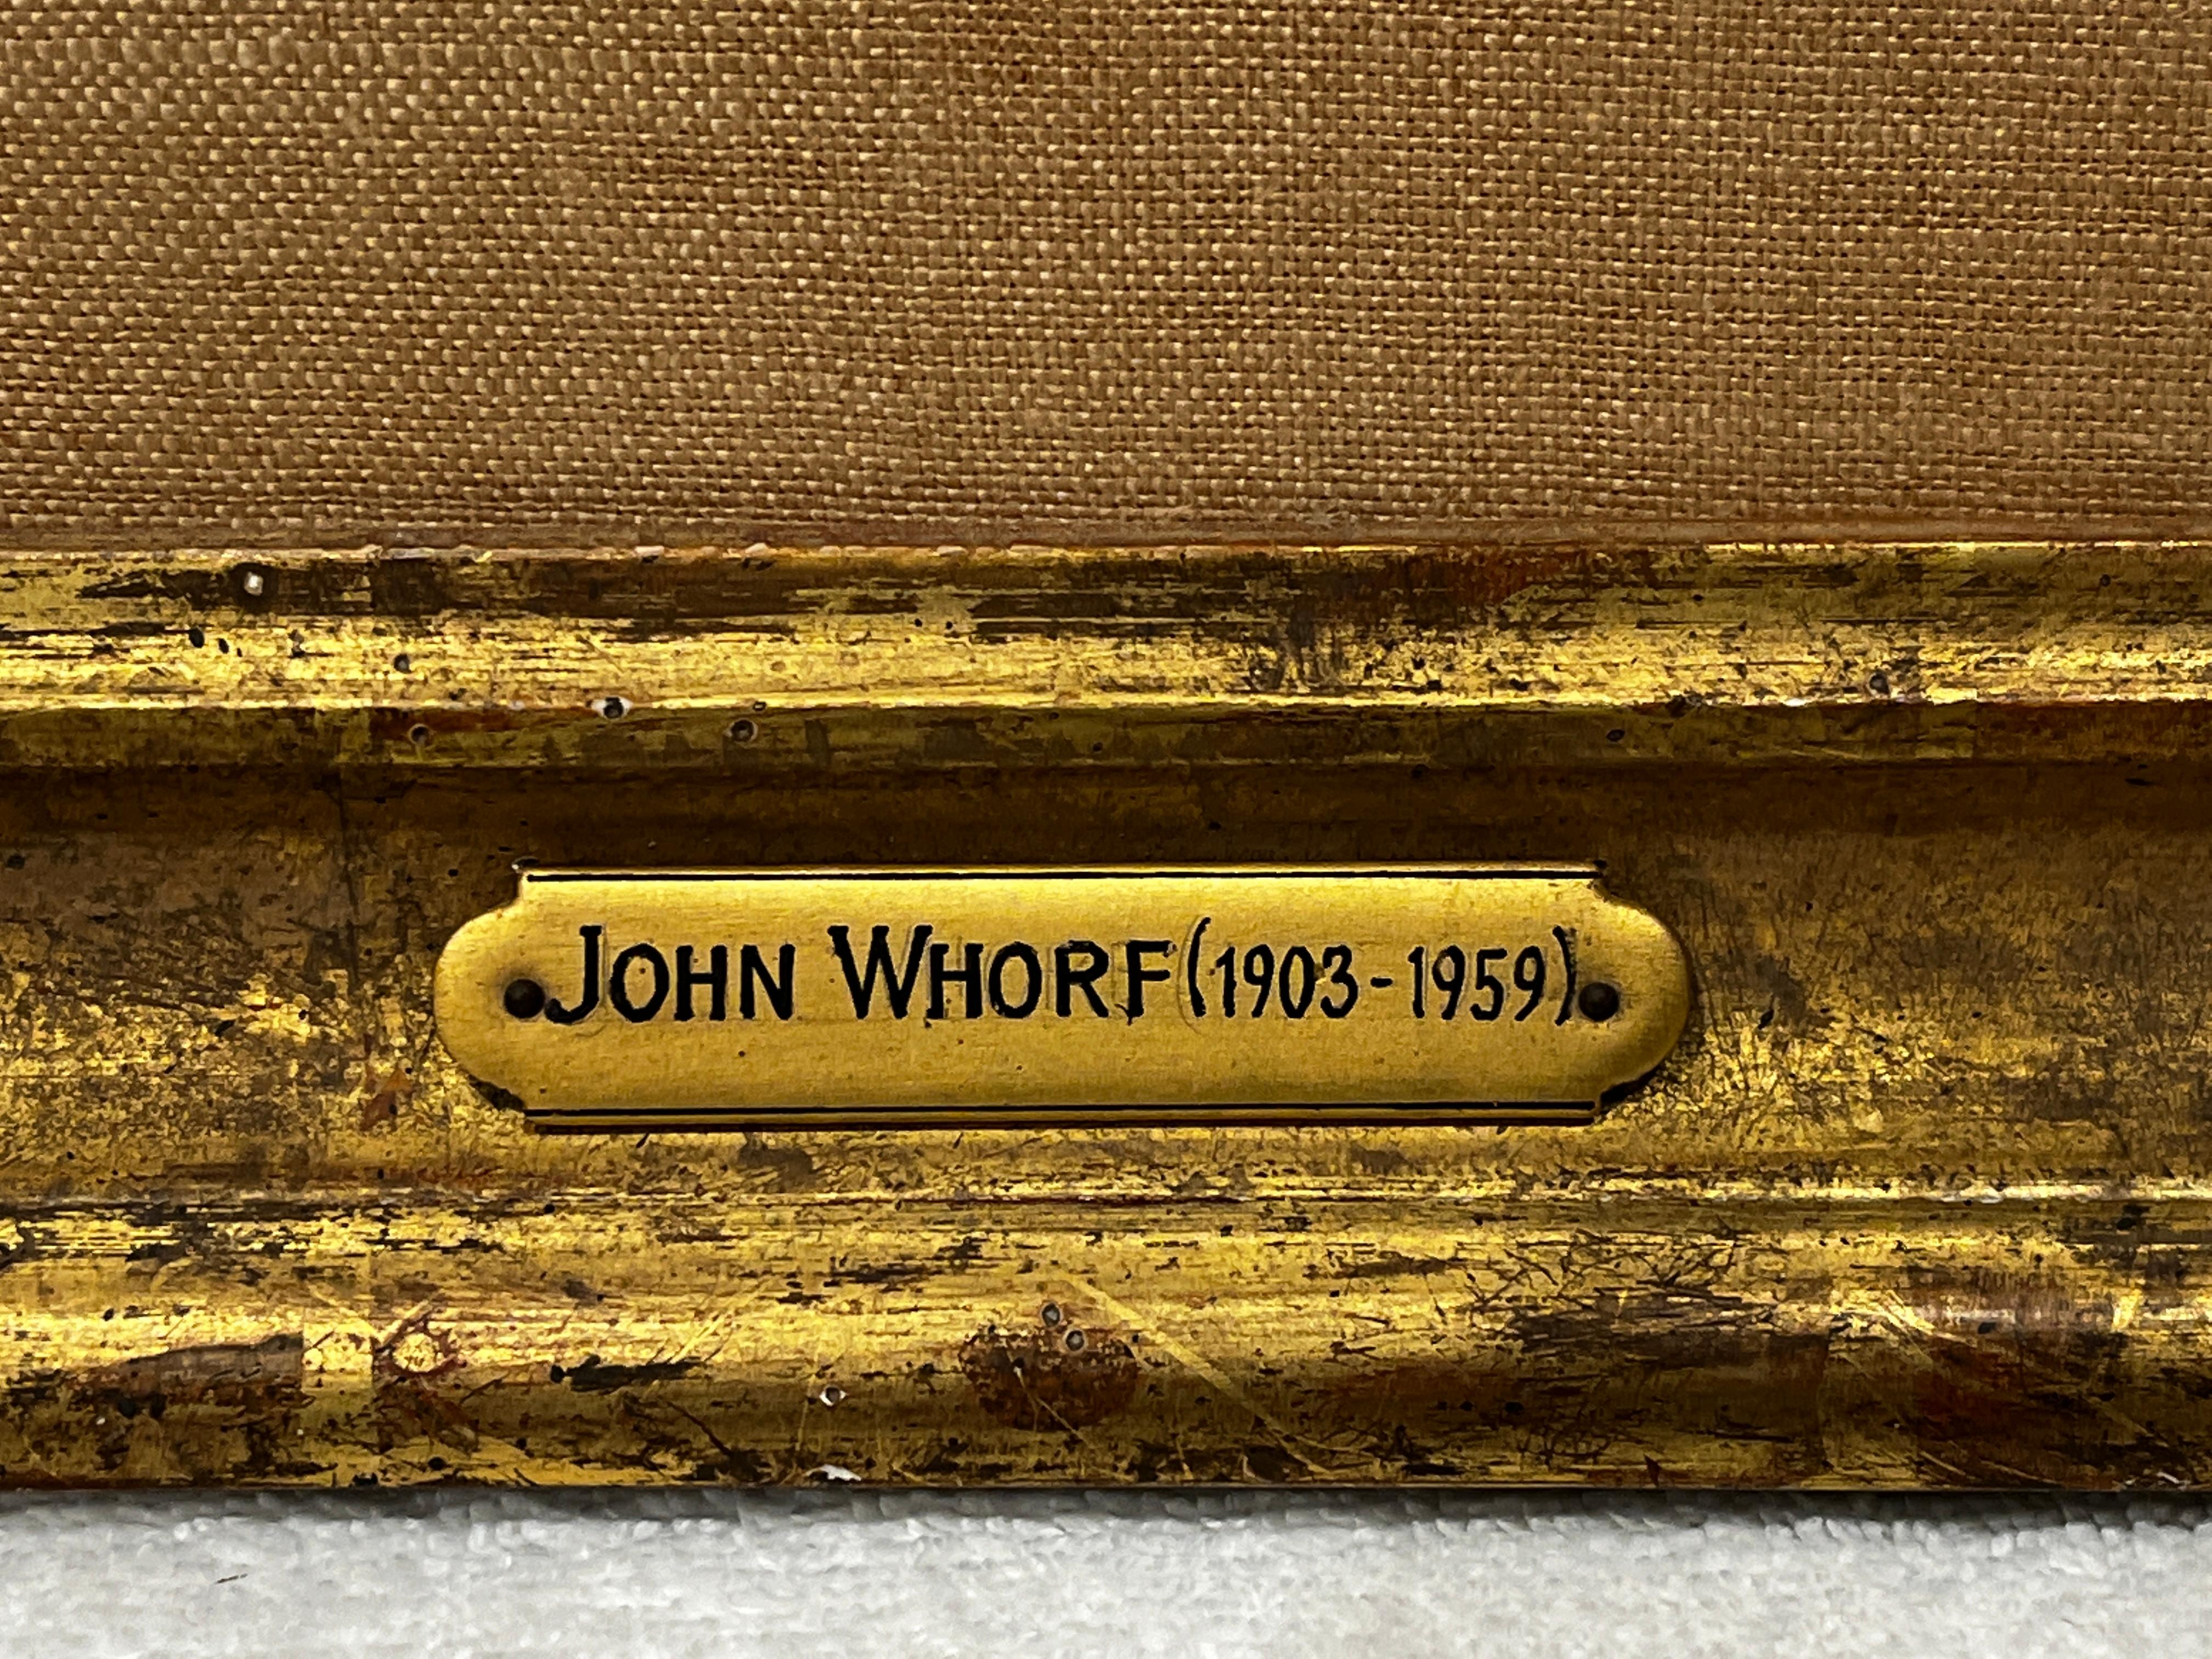 John Whorf, geboren 1903, war ein begabter, eigenwilliger Künstler, der schon in jungen Jahren große Erfolge erzielte. 

Von seinem künstlerischen Vater ermutigt, studierte Whorf in seinen frühen Teenagerjahren kurz, bevor er beschloss, dass es